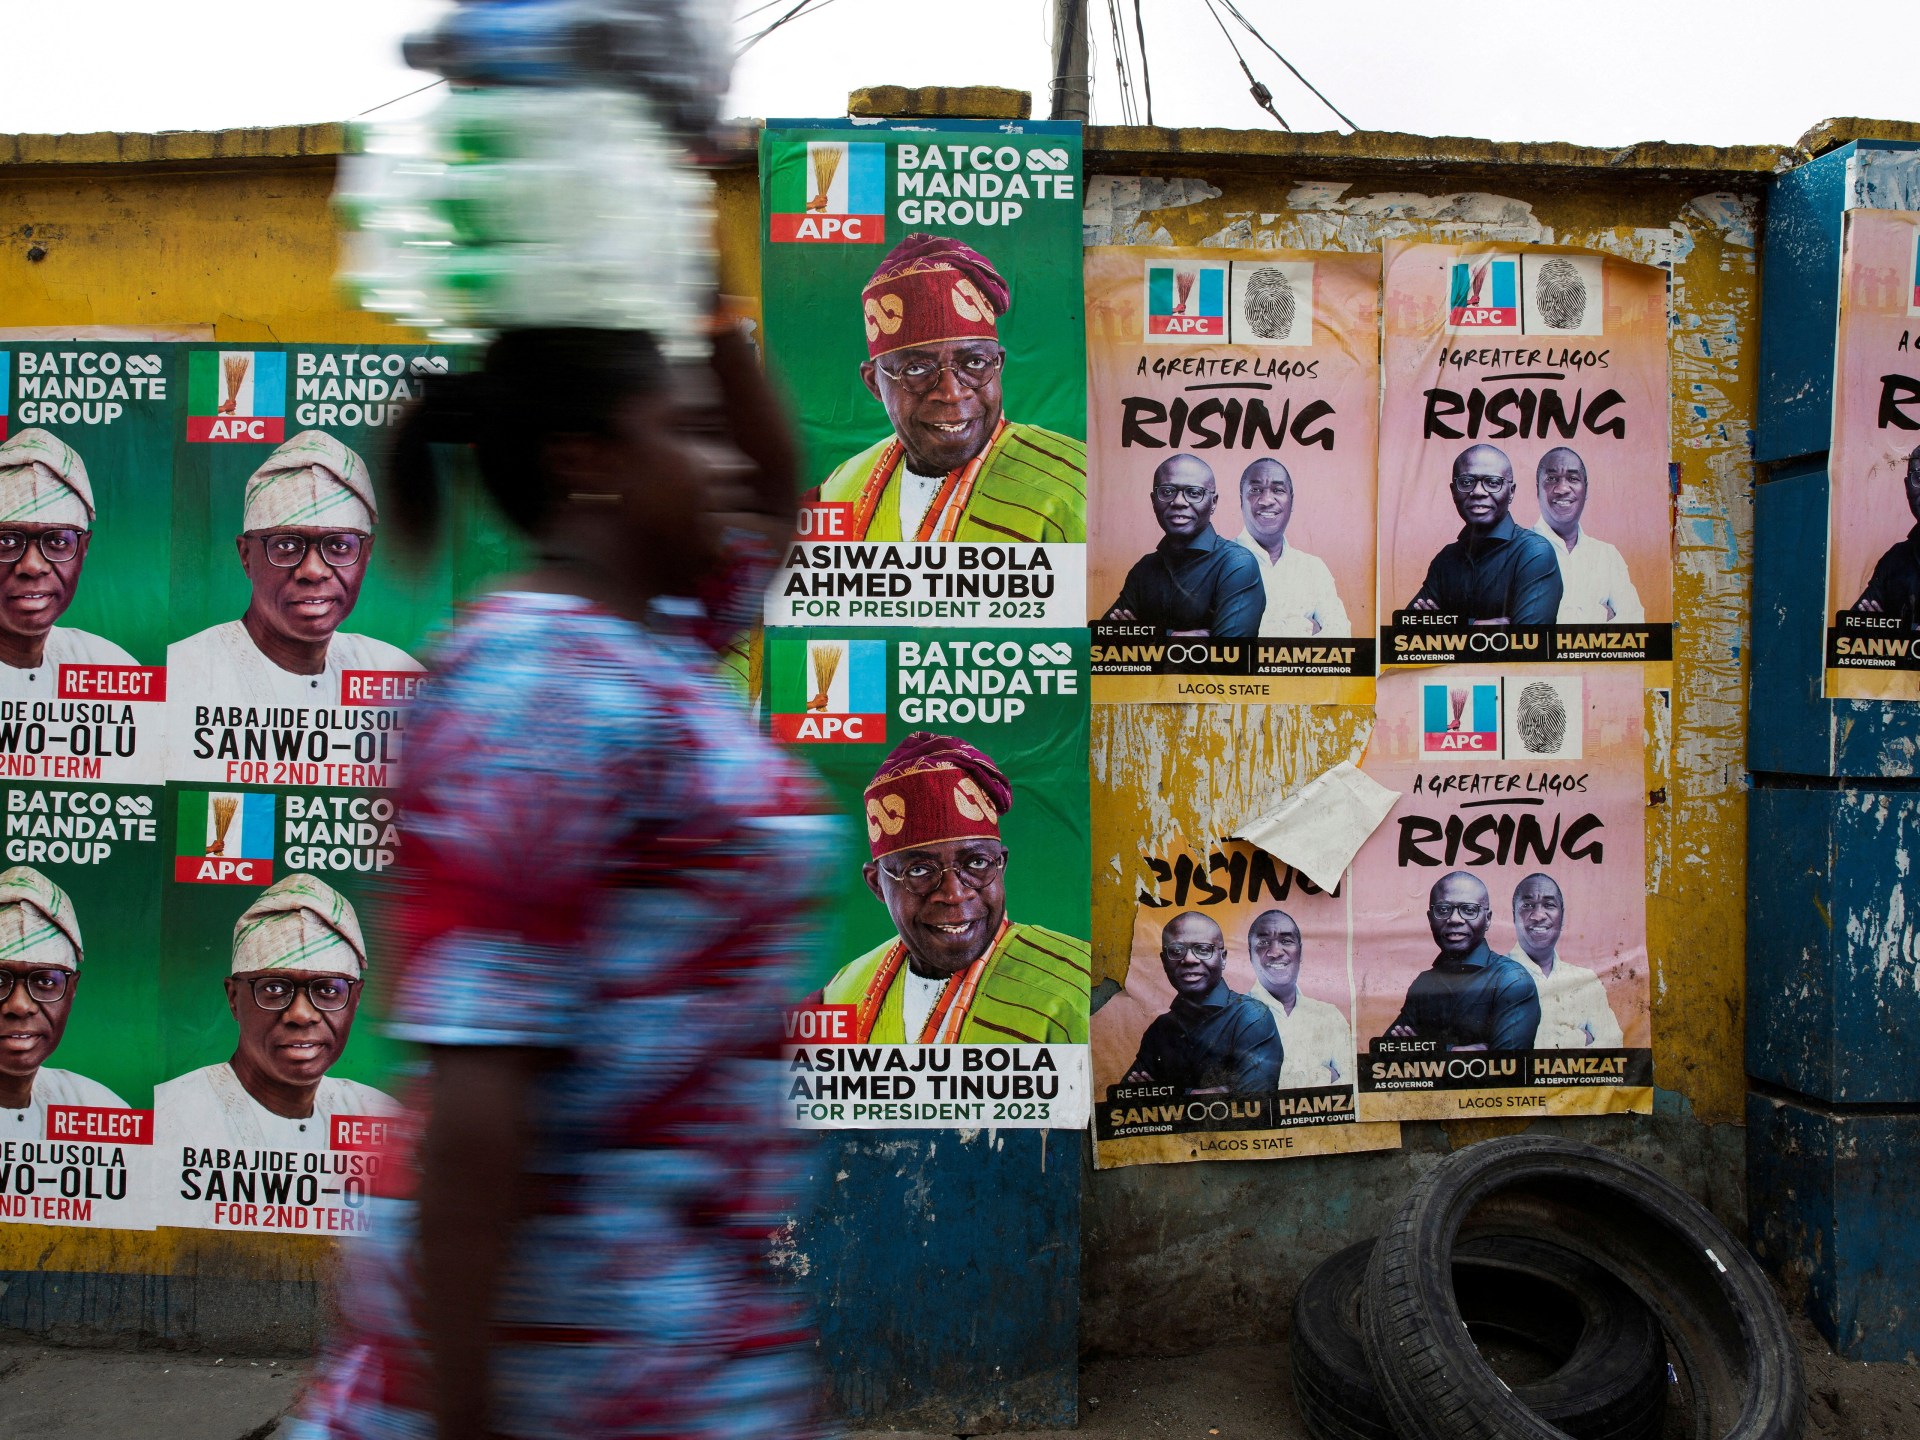 Bola Tinubu pimpin pemilu Nigeria, oposisi cari suara baru |  Berita Pemilu